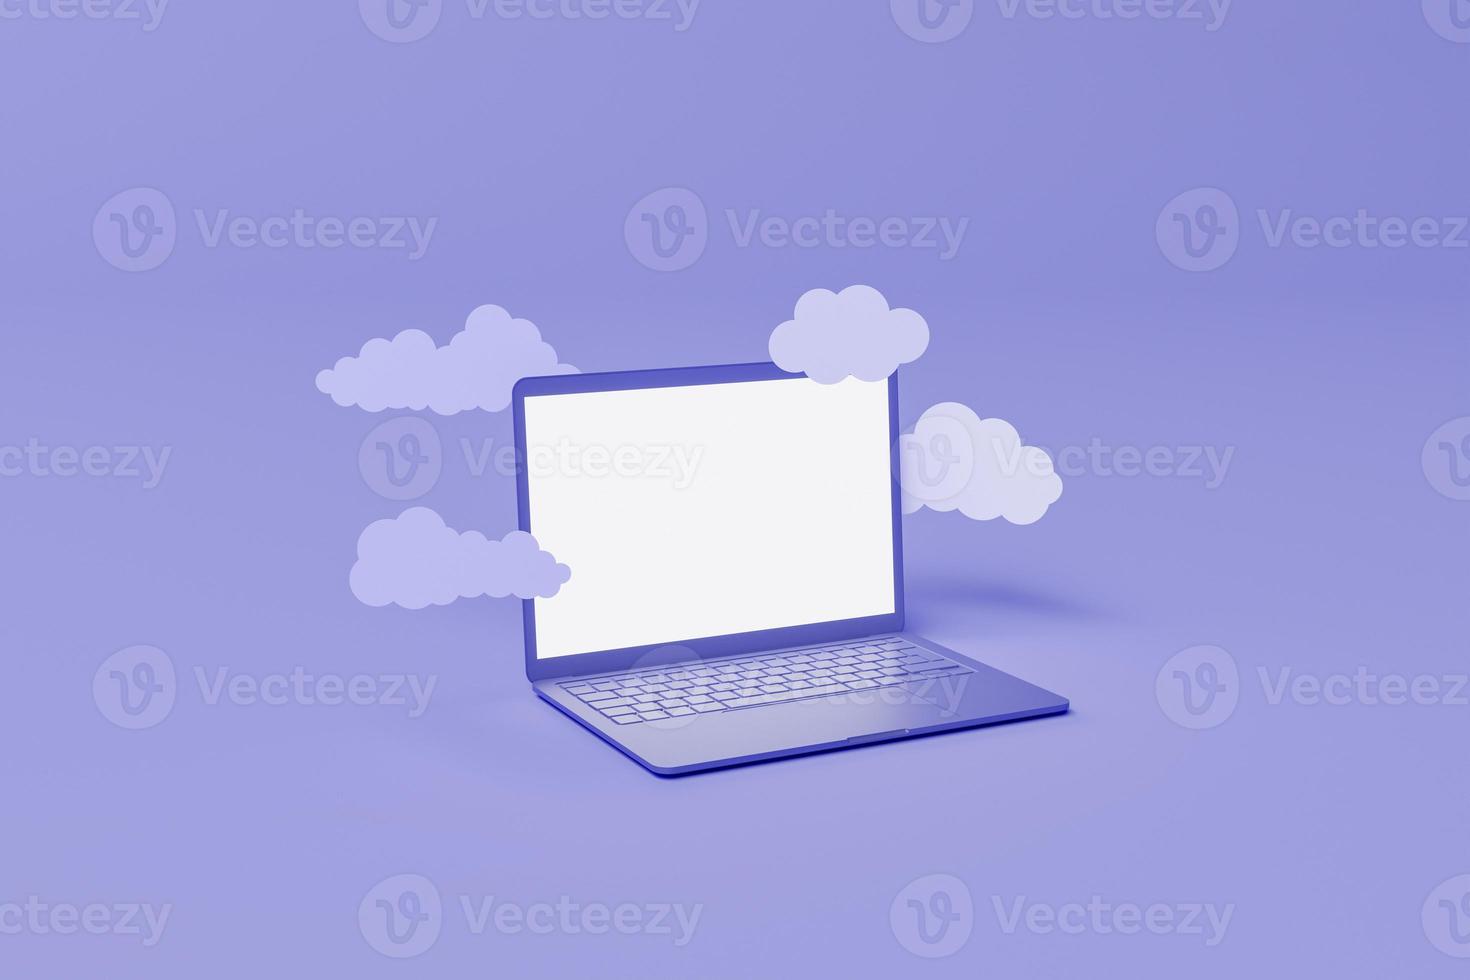 portátil mínimo con nubes planas flotando alrededor foto